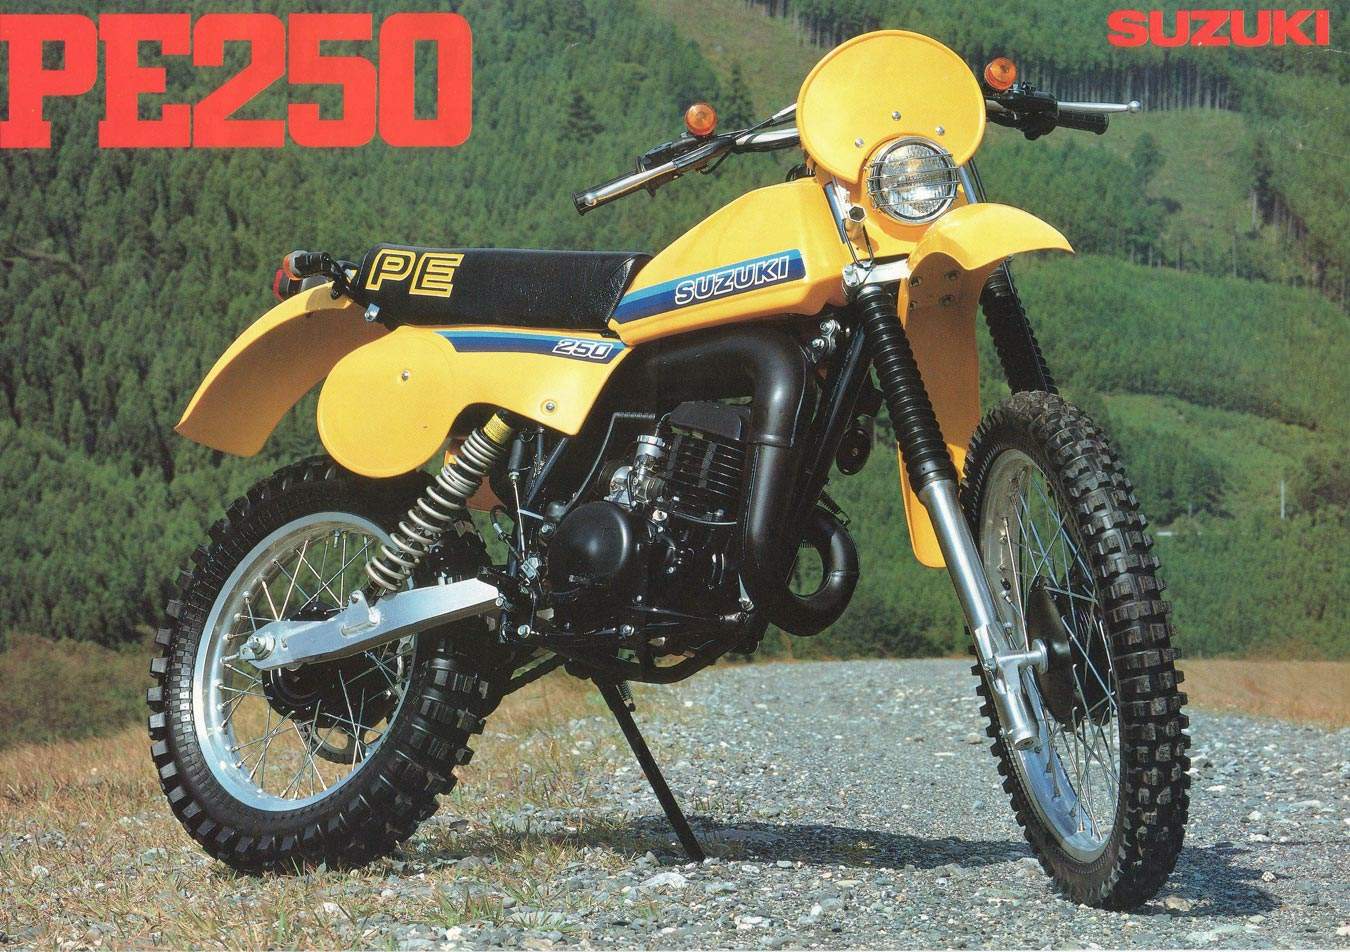 , 1981 Suzuki PE 250